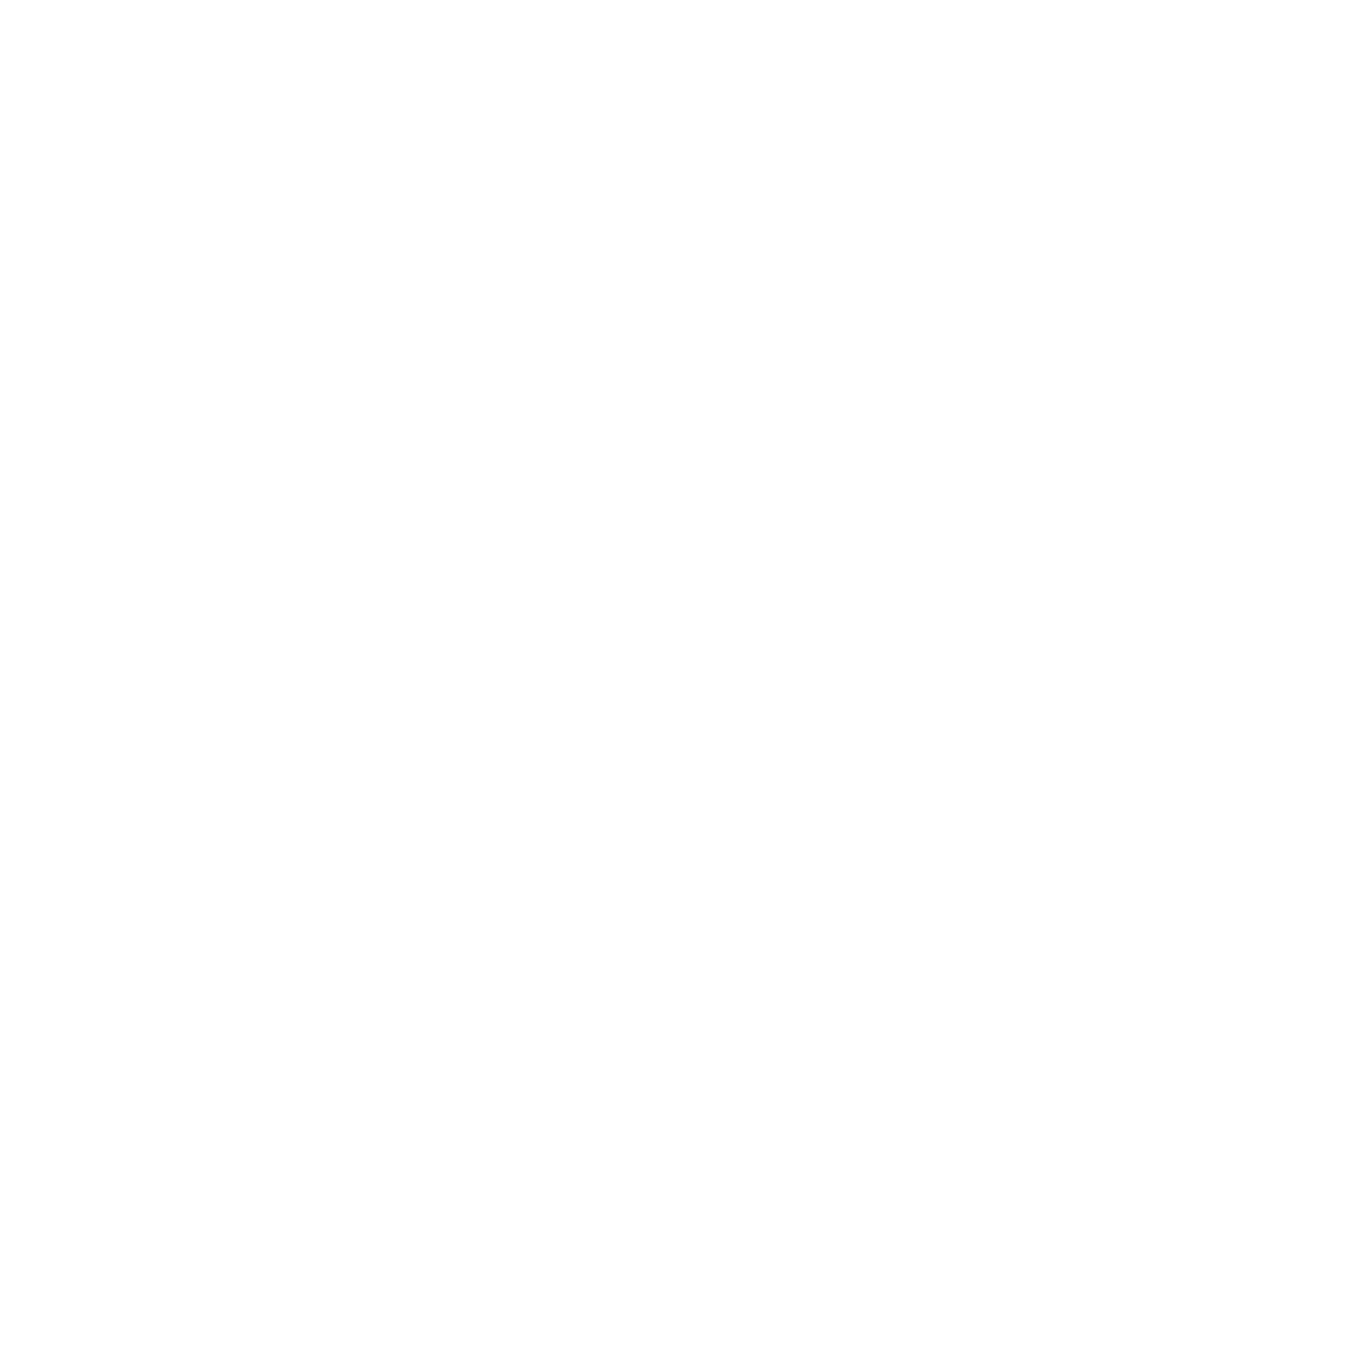 apkorigin.com